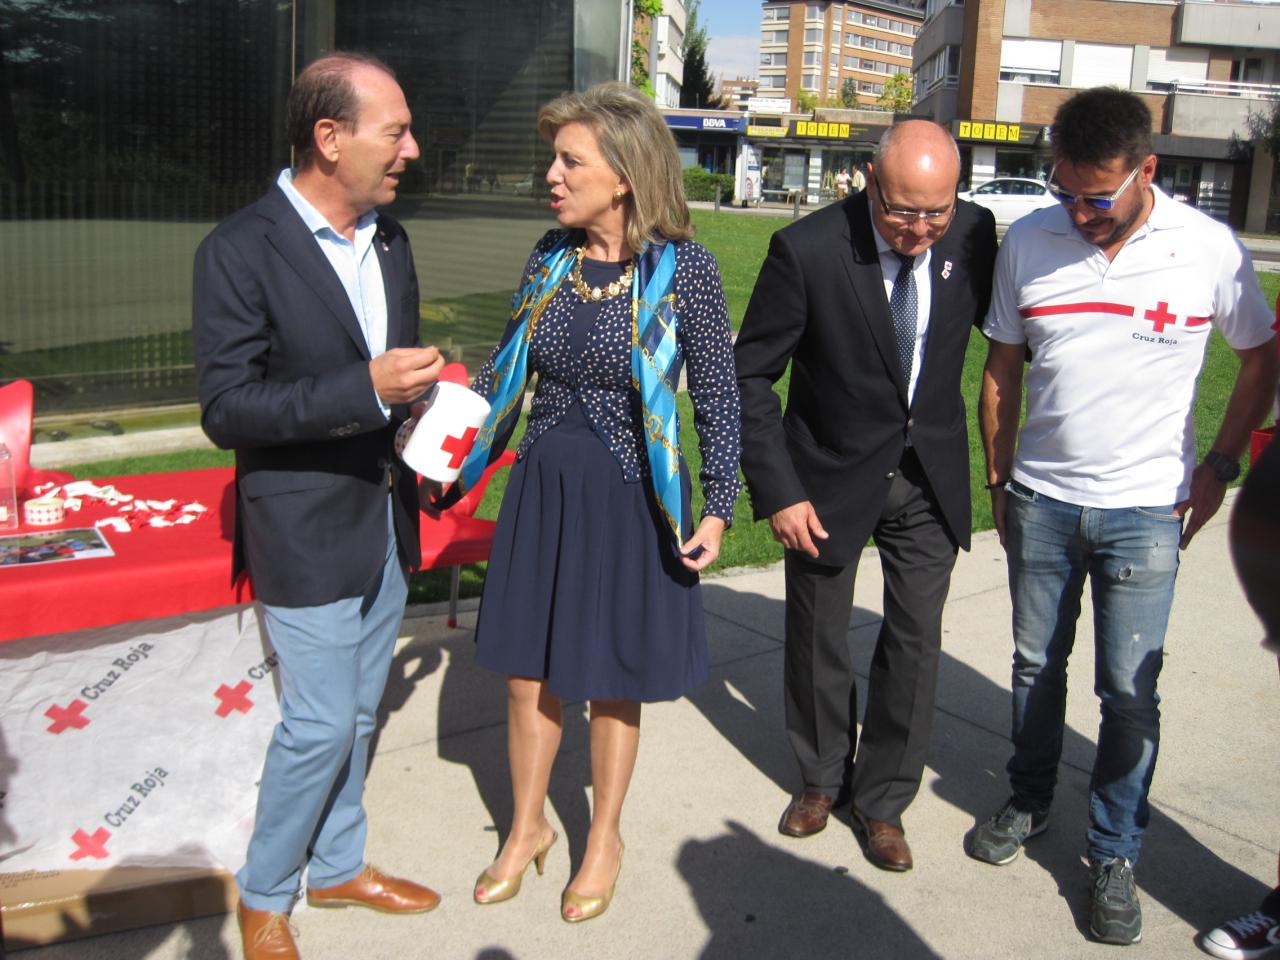 La delegada del Gobierno en Castilla y León participa en Valladolid en la Fiesta de la Banderita como apoyo a Cruz Roja “para reconocer su labor de protección a los más débiles”